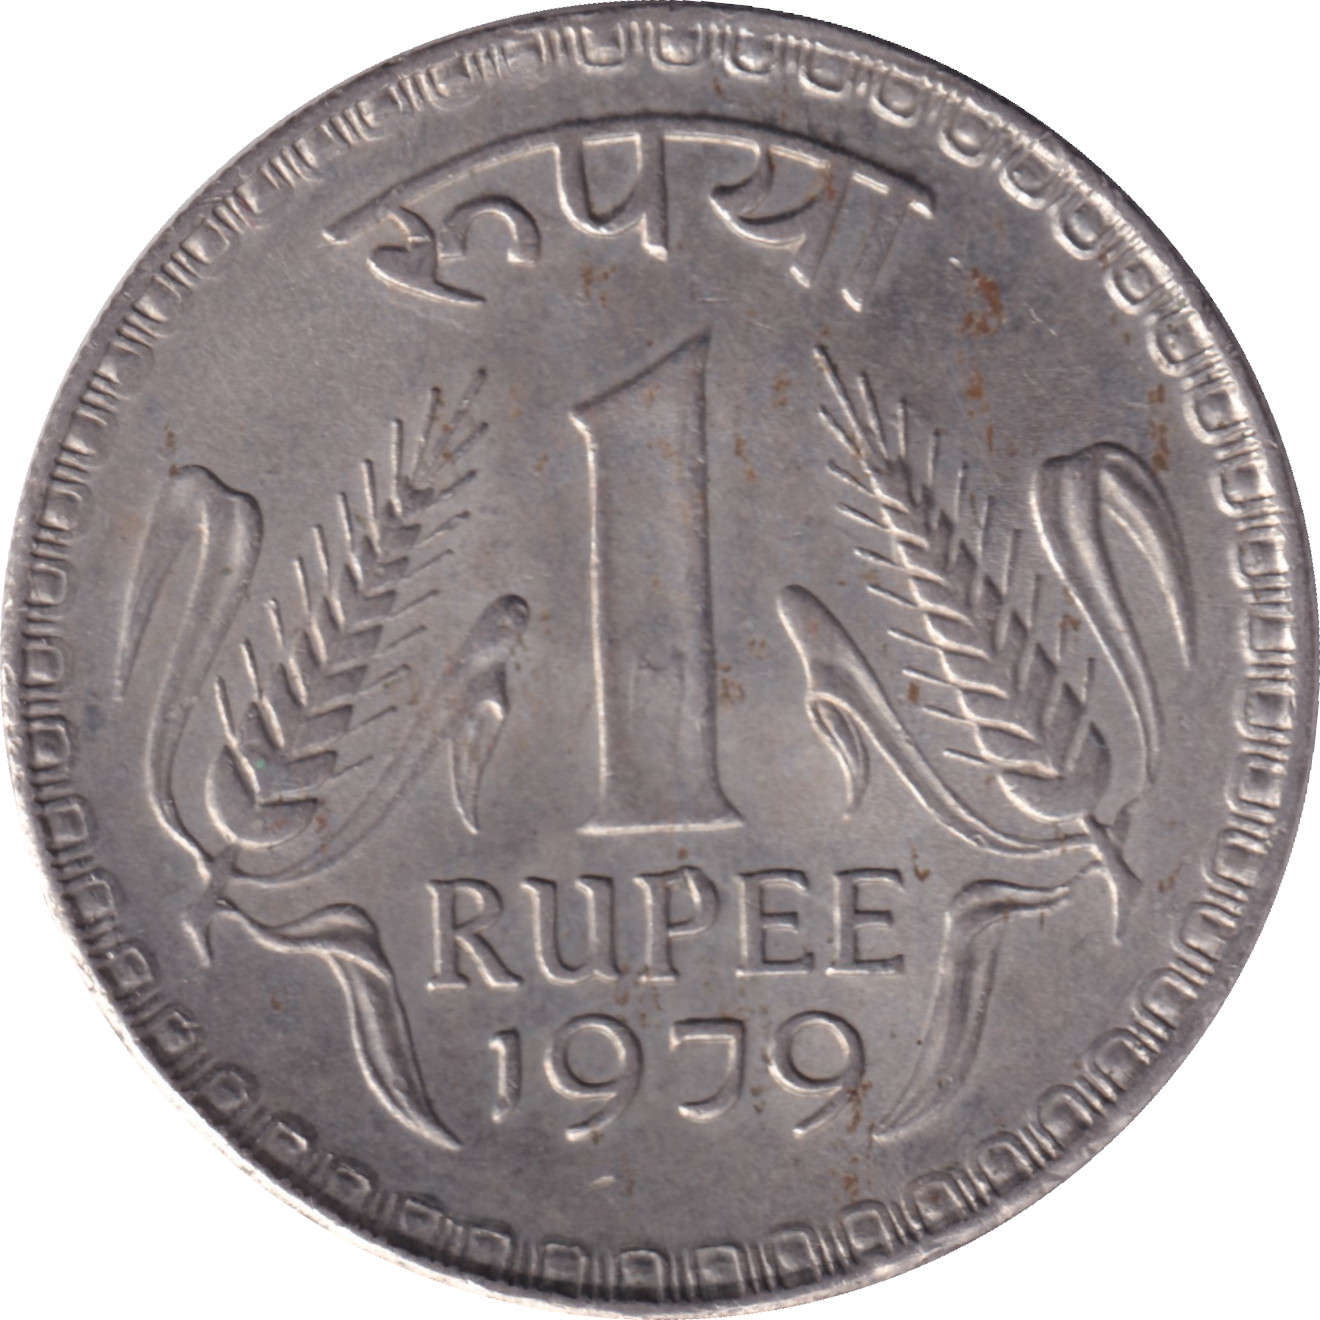 1 rupee - Emblème - Type 1